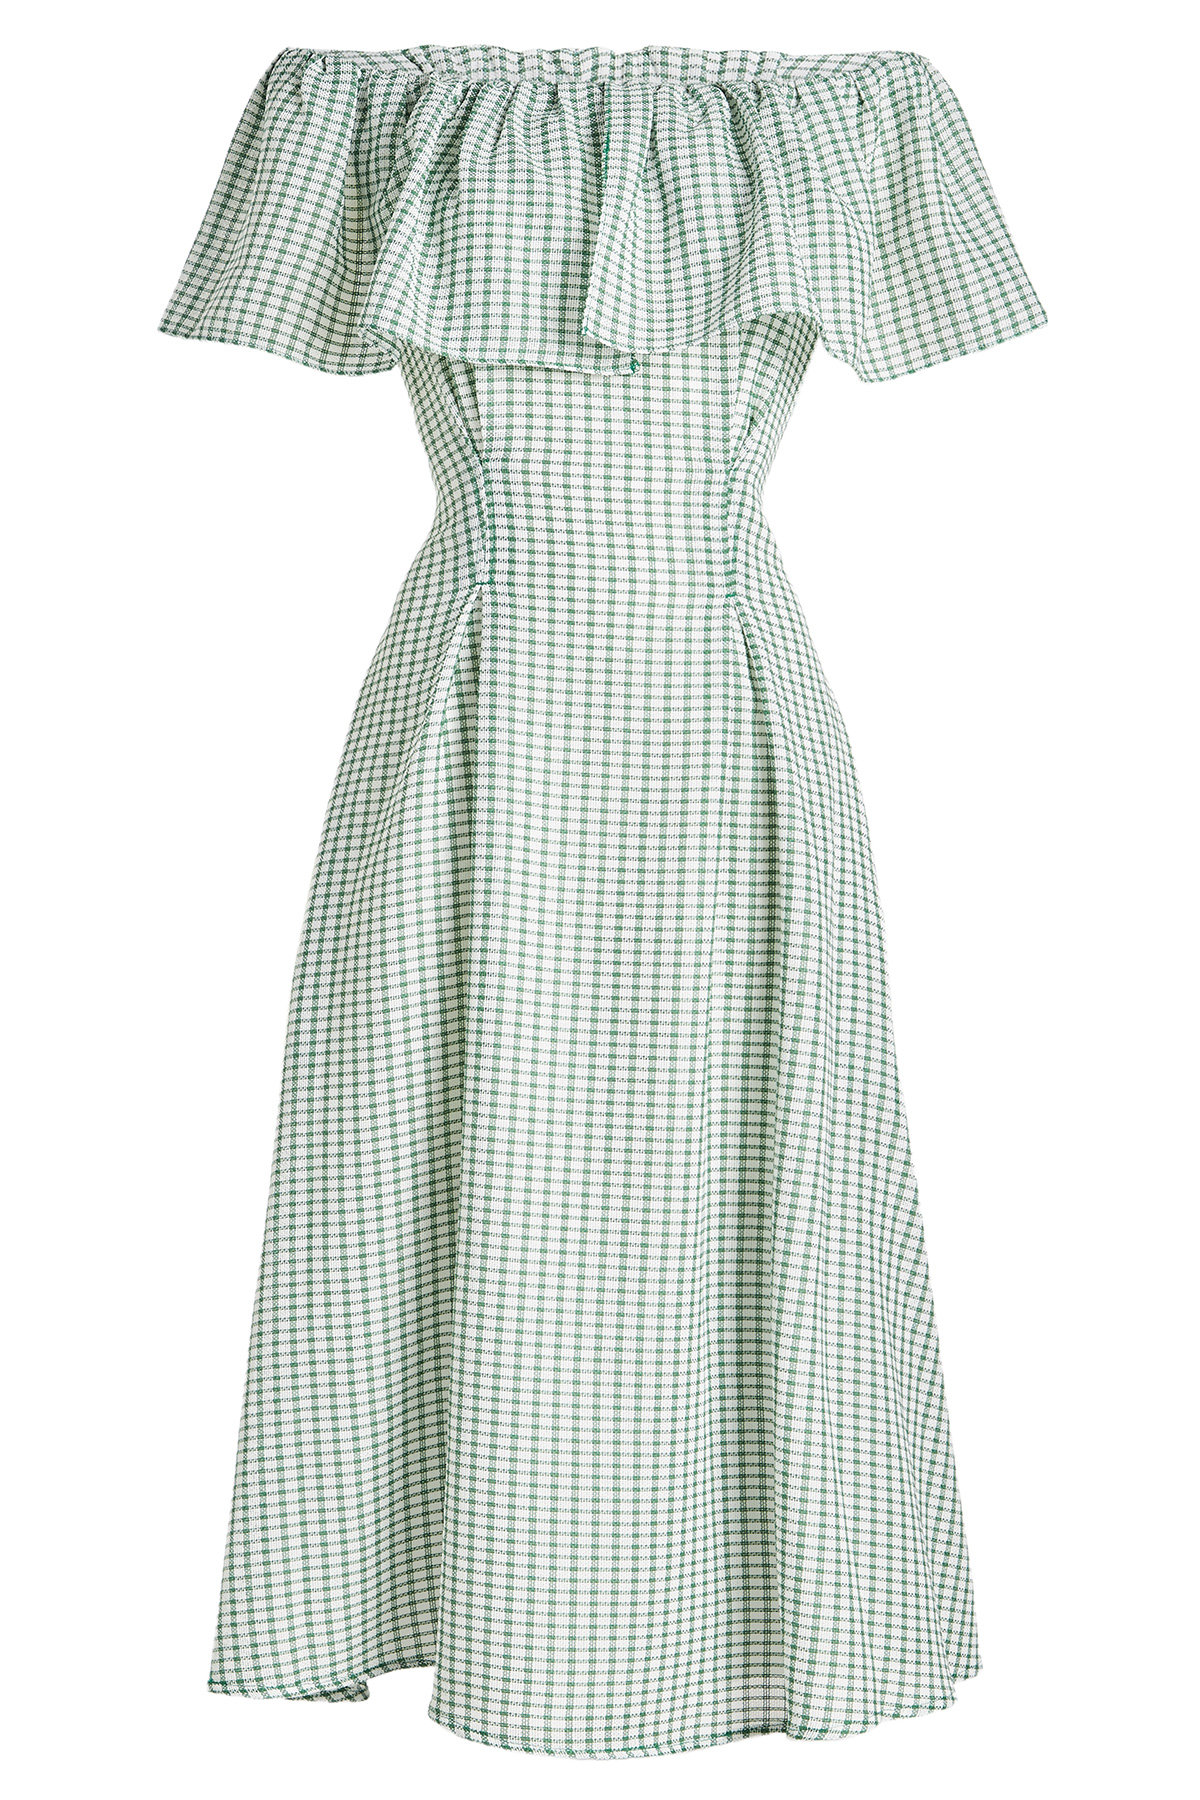 Rejina Pyo - Olivia Printed Dress